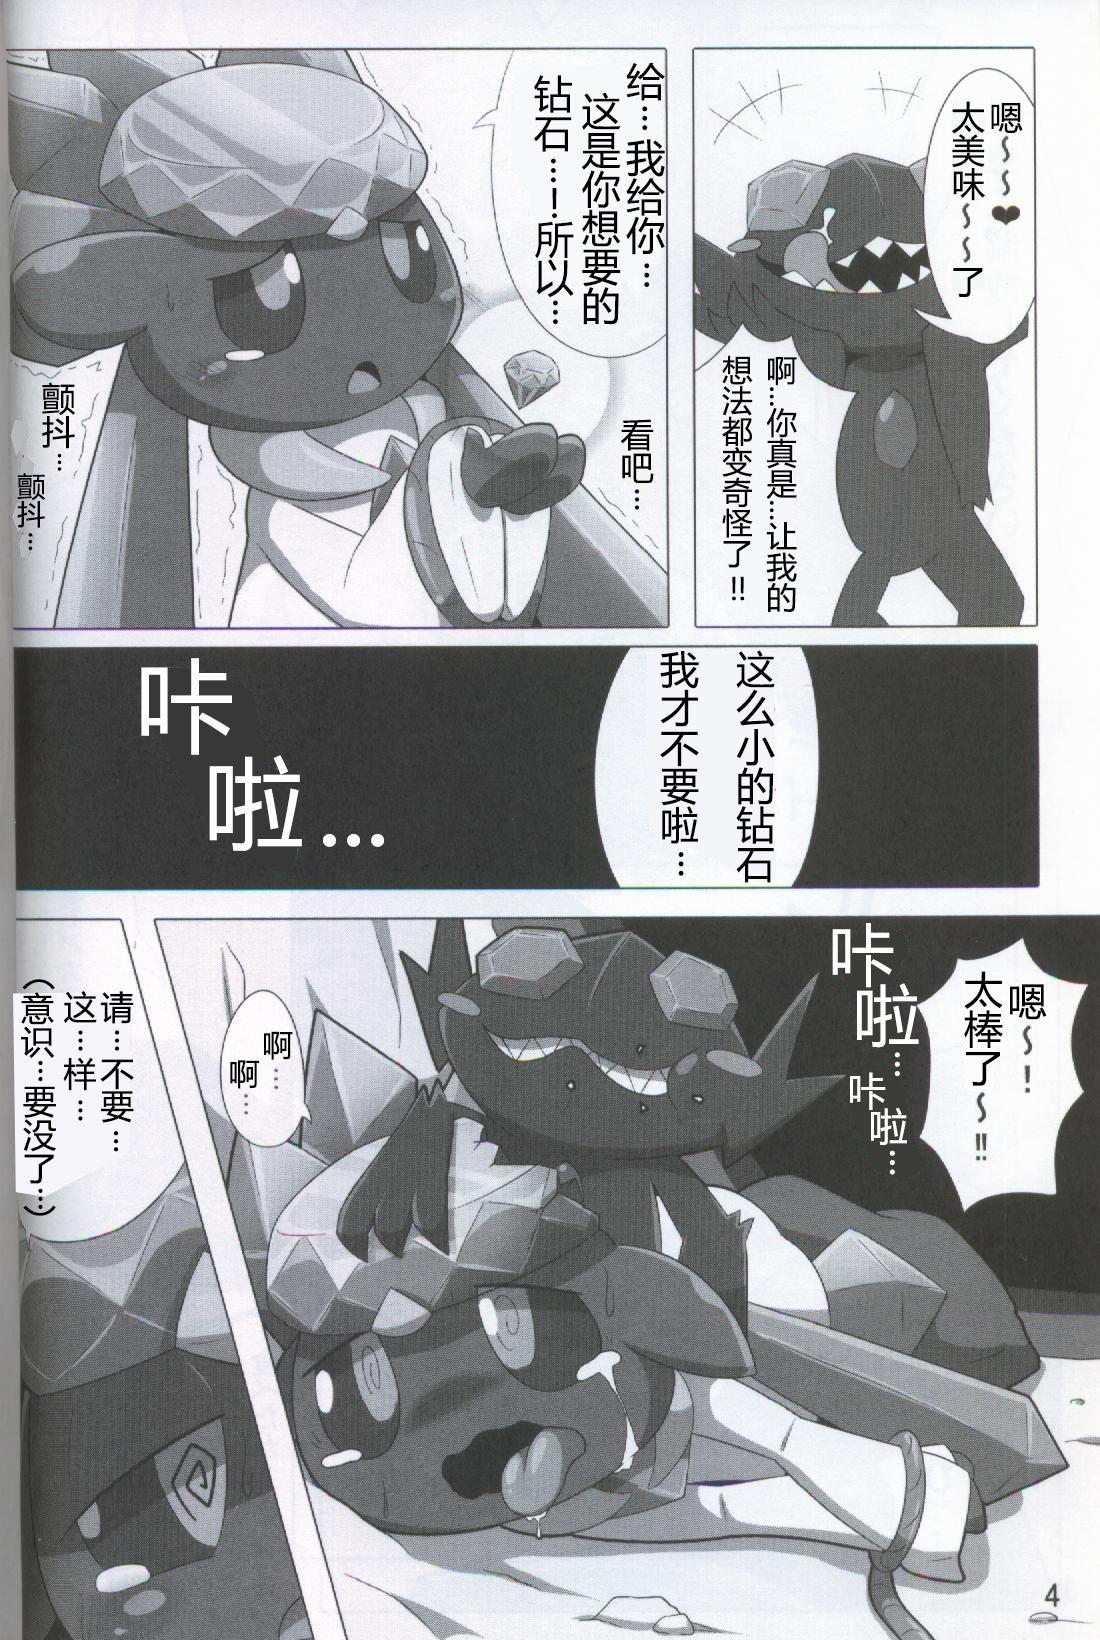 Asses Pokéda | 宝可堕 - Pokemon Thick - Page 5